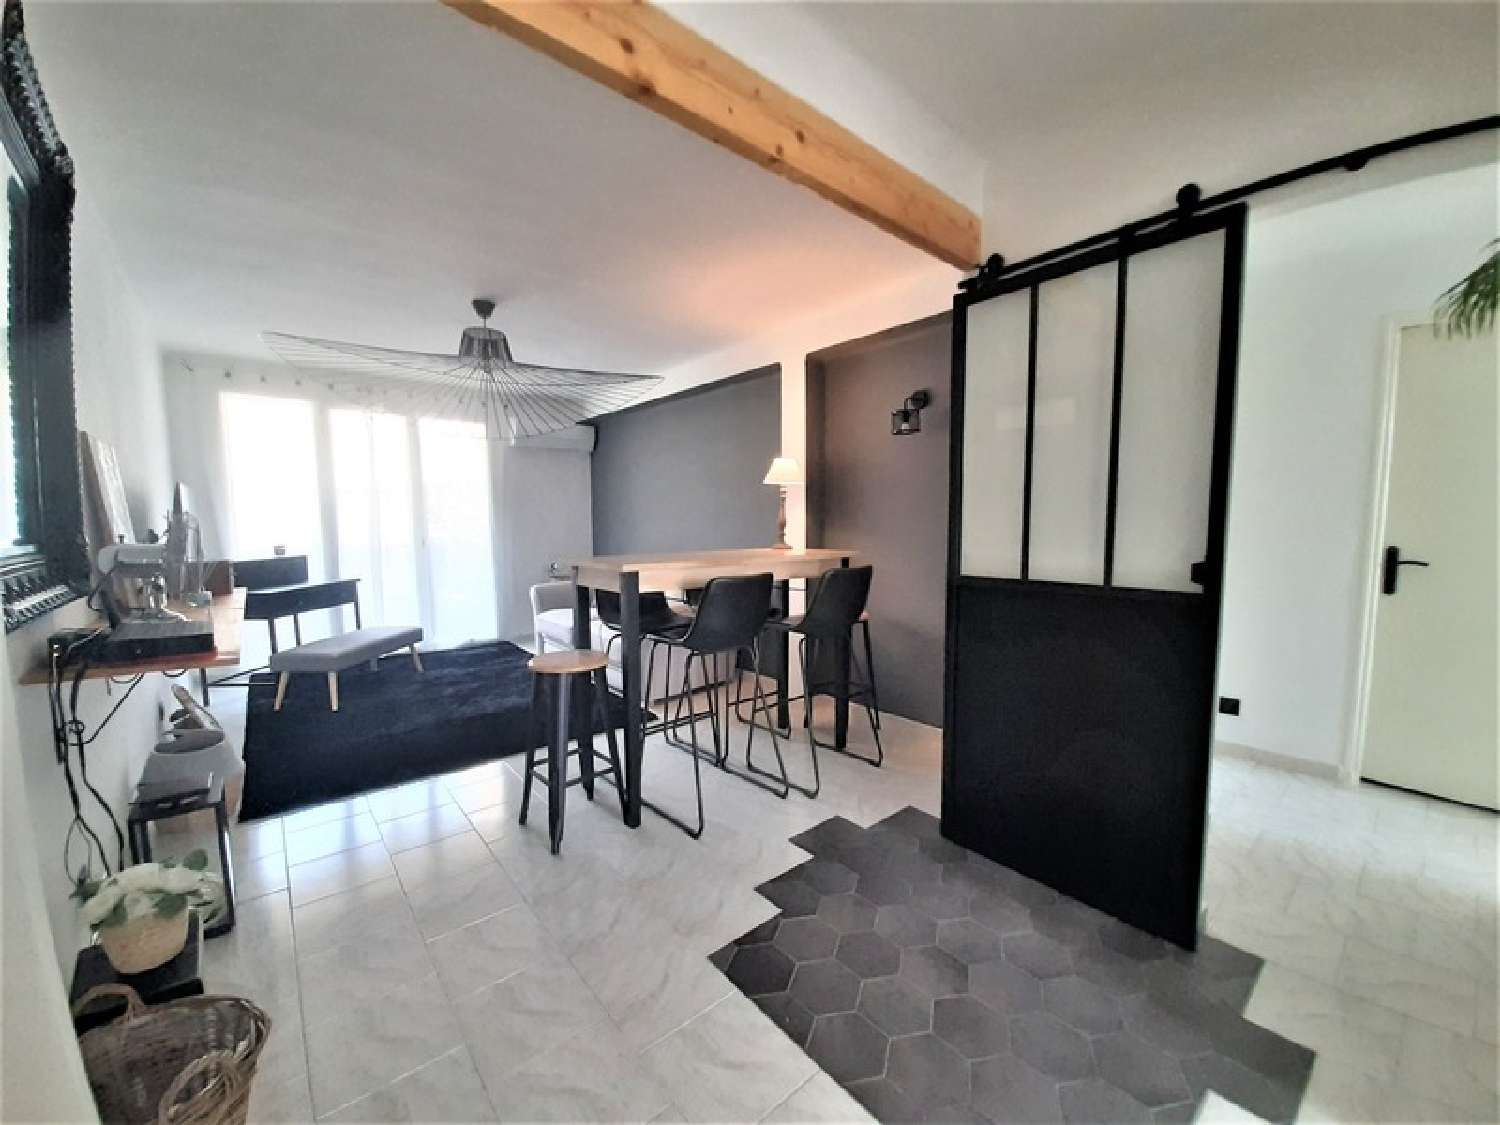  for sale apartment Martigues Bouches-du-Rhône 2